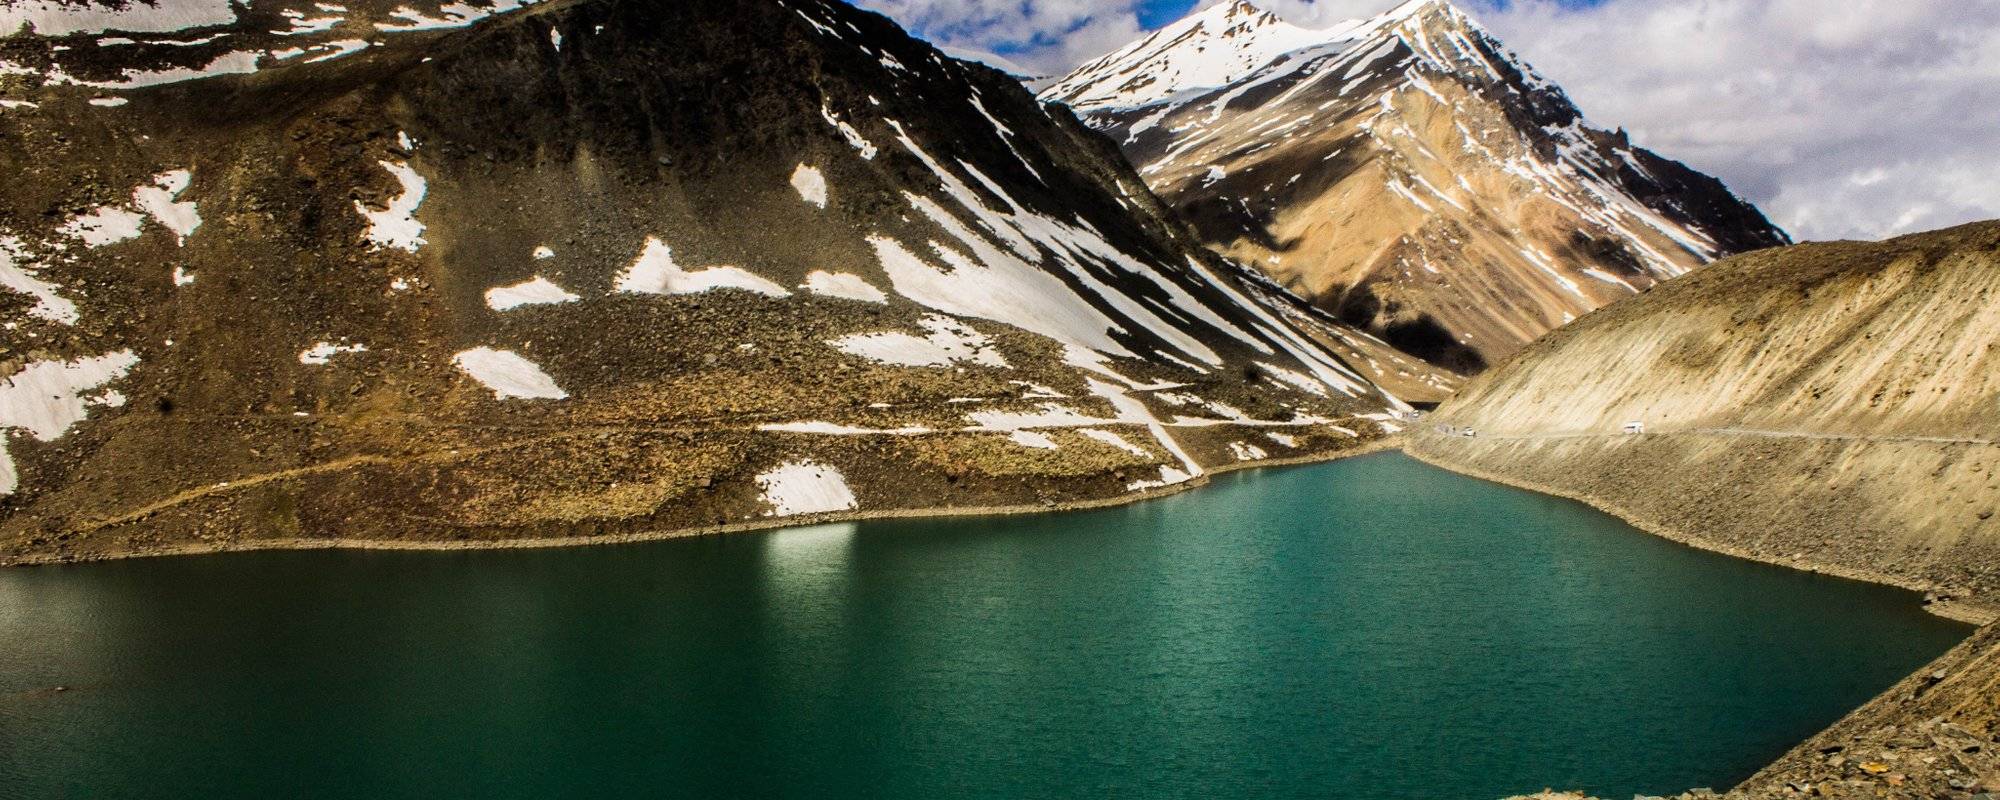 Part-02 : 30 Himalayan High-Altitude Lakes